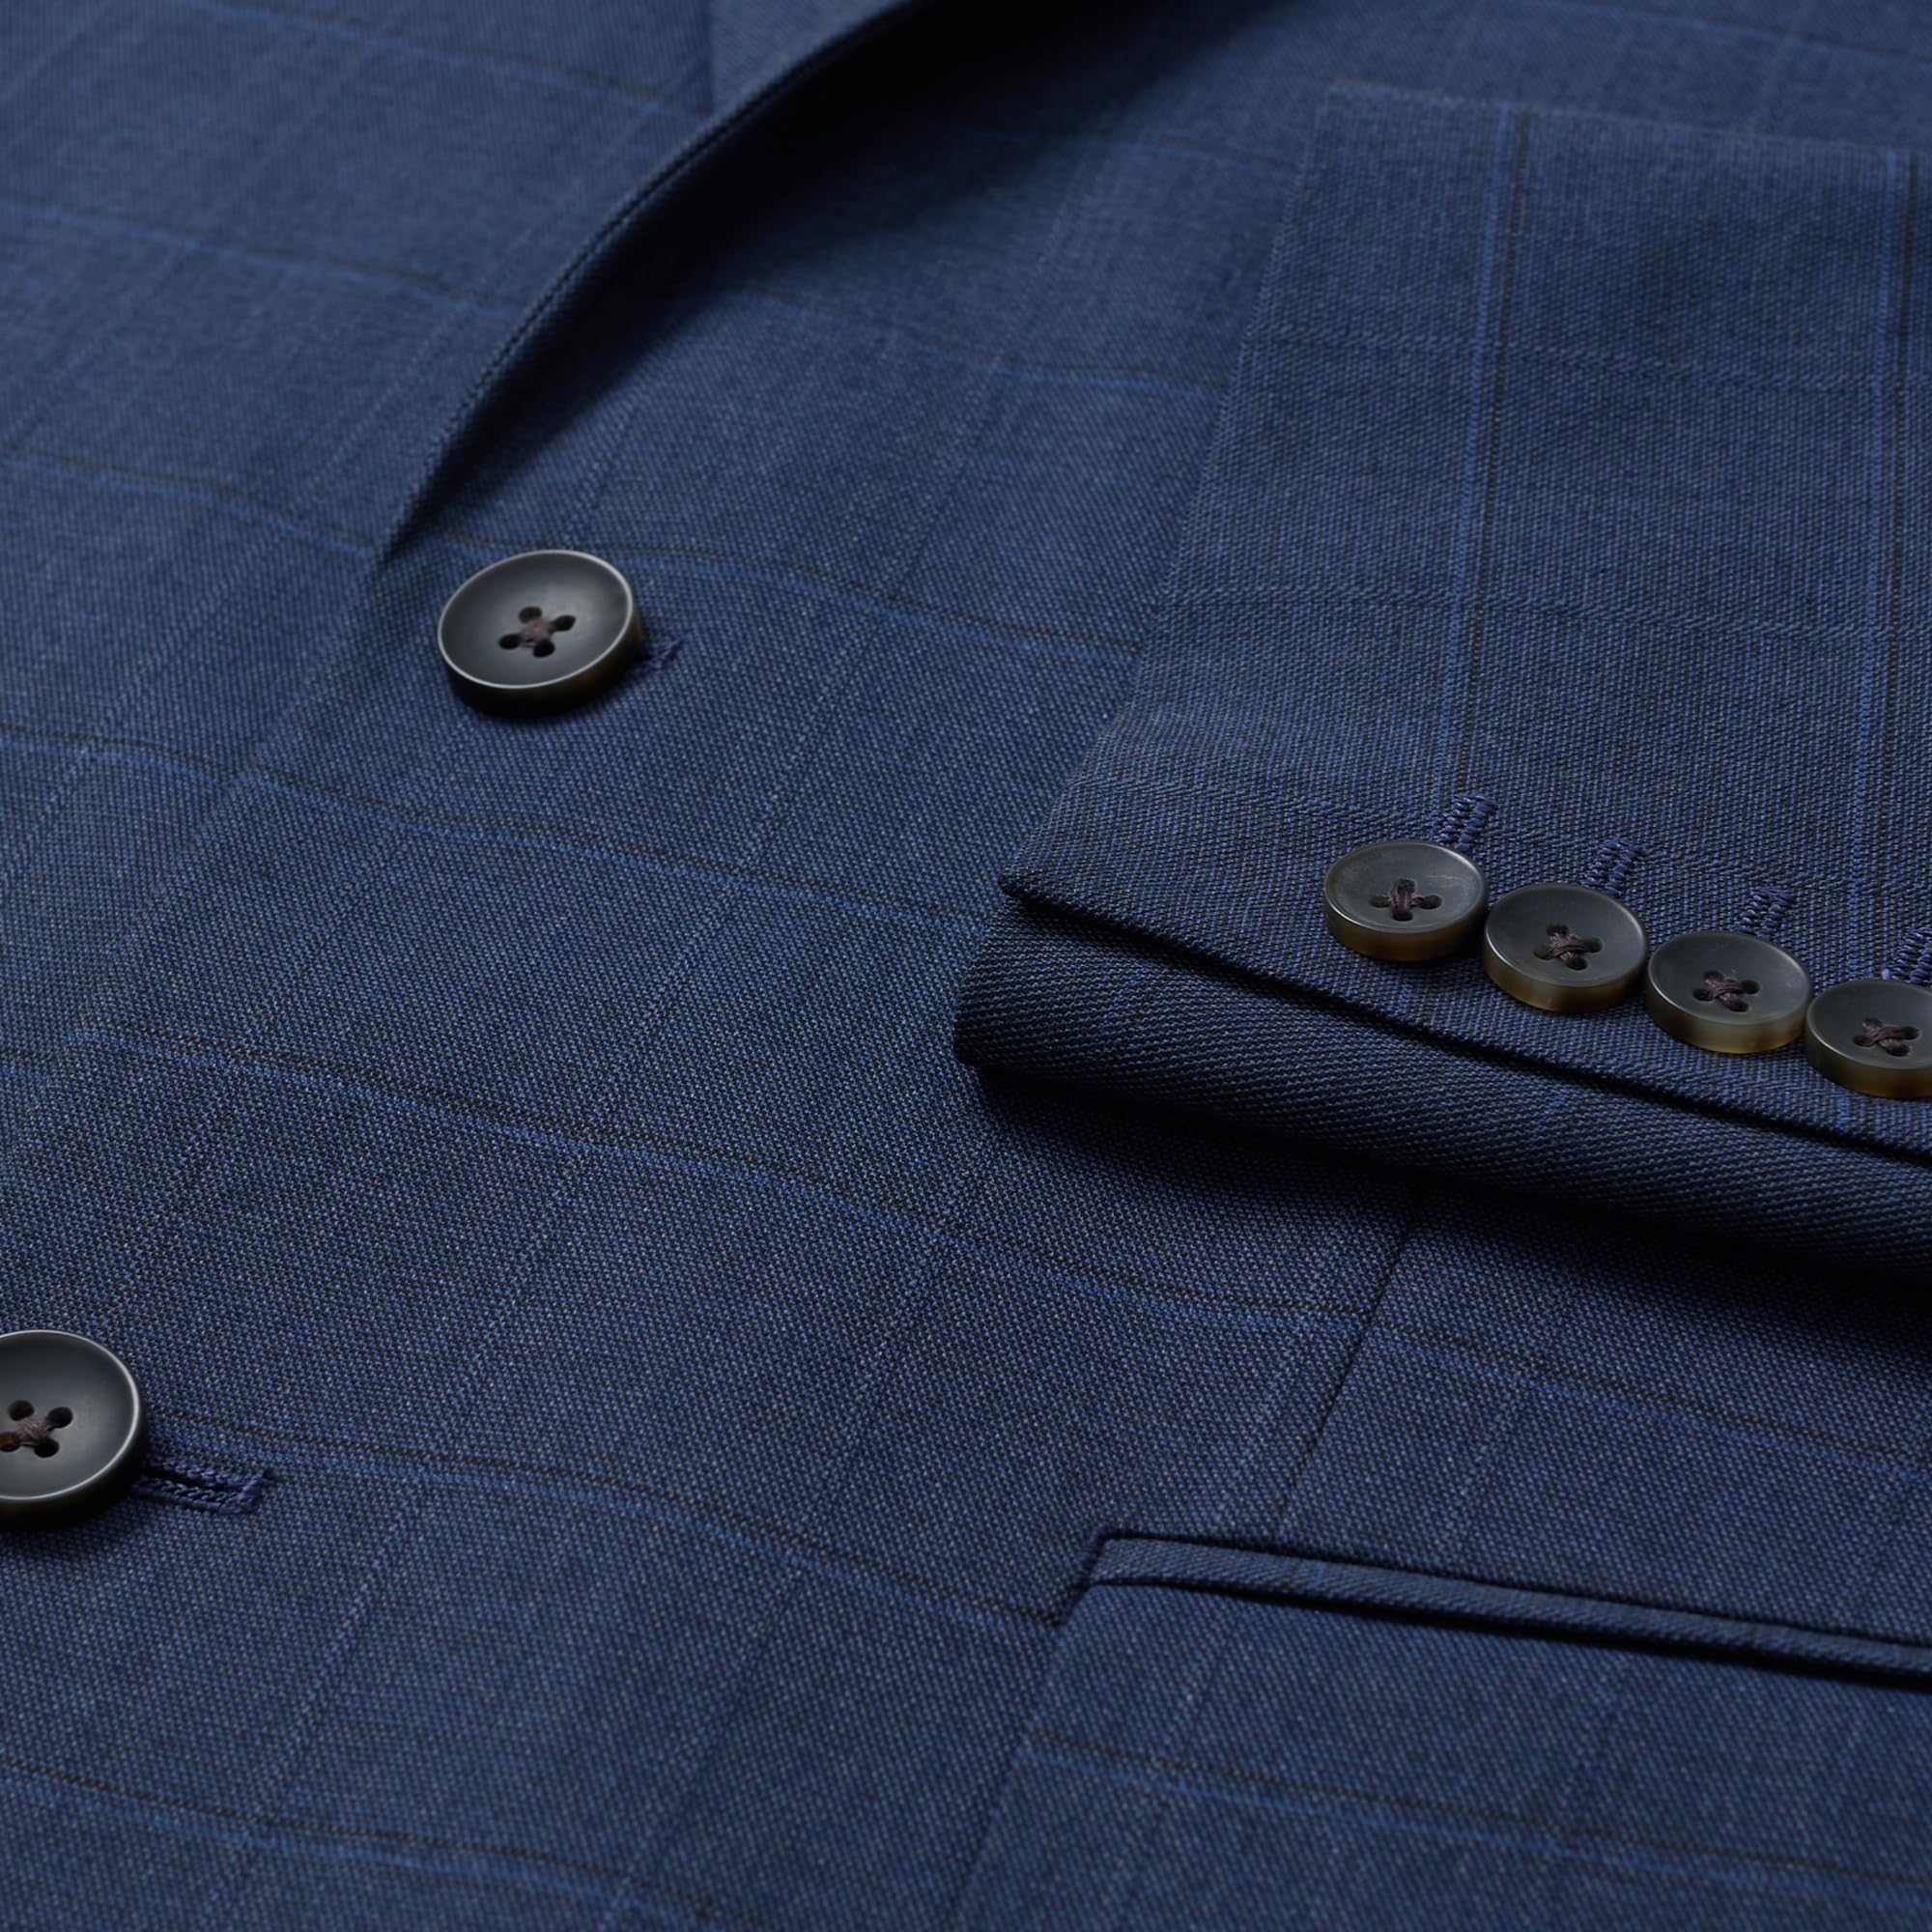 J.M. Haggar Men's Premium Stretch Classic Fit Subtle Pattern Suit Separates – Pants & Jackets